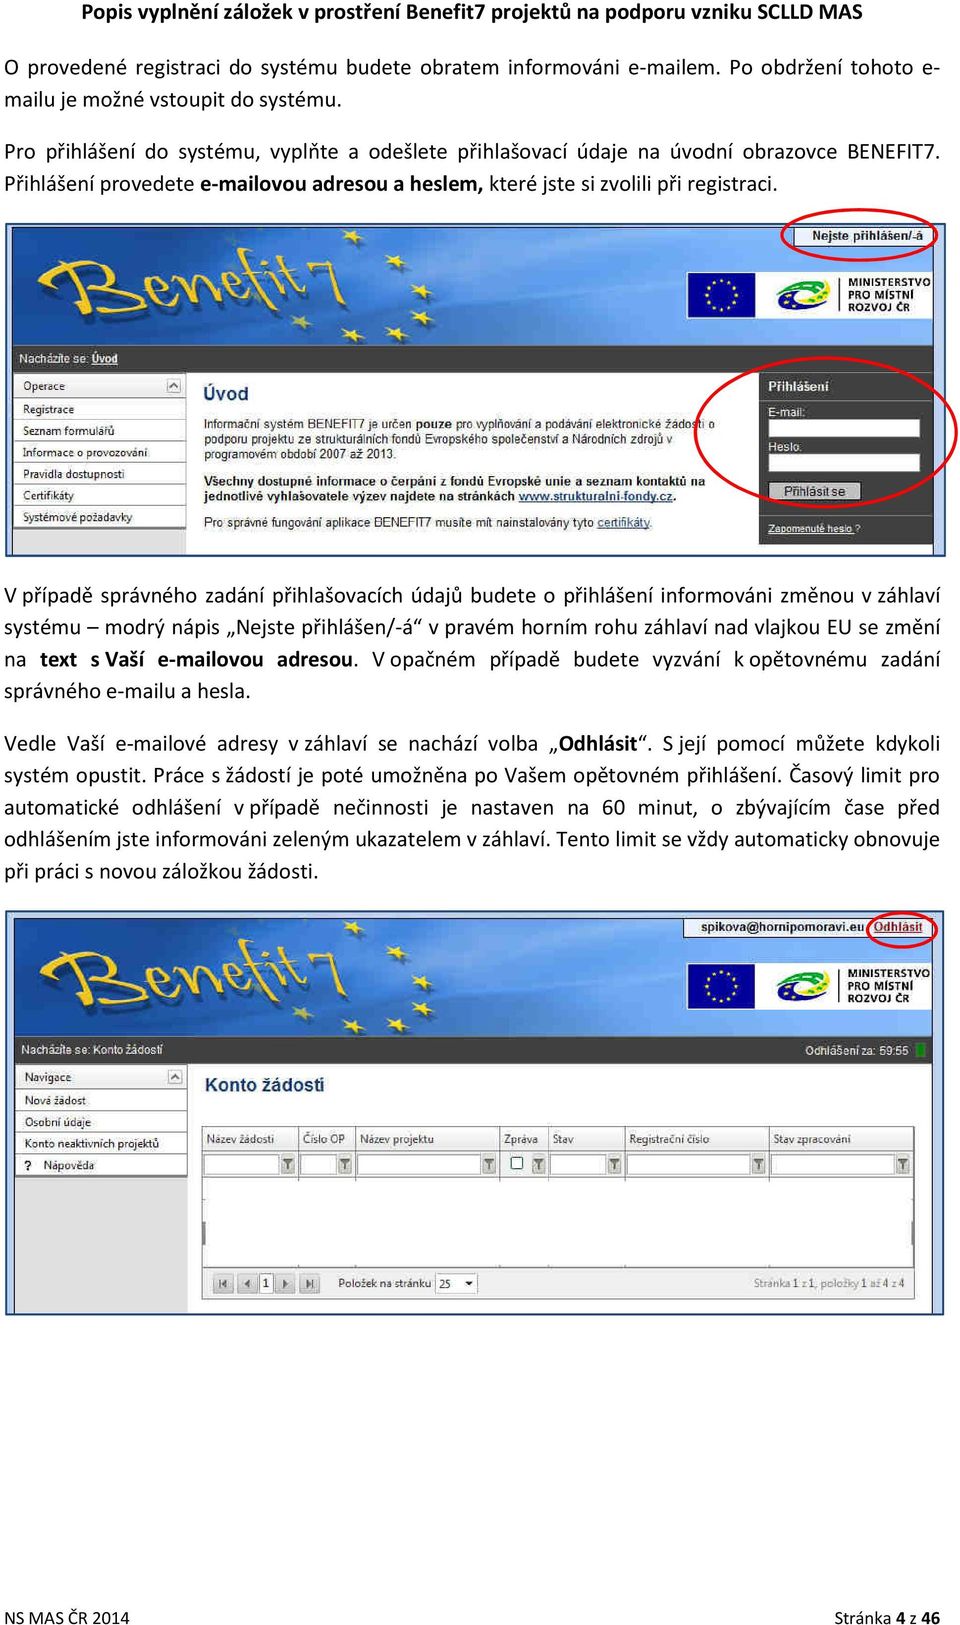 V případě správného zadání přihlašovacích údajů budete o přihlášení informováni změnou v záhlaví systému modrý nápis Nejste přihlášen/-á v pravém horním rohu záhlaví nad vlajkou EU se změní na text s